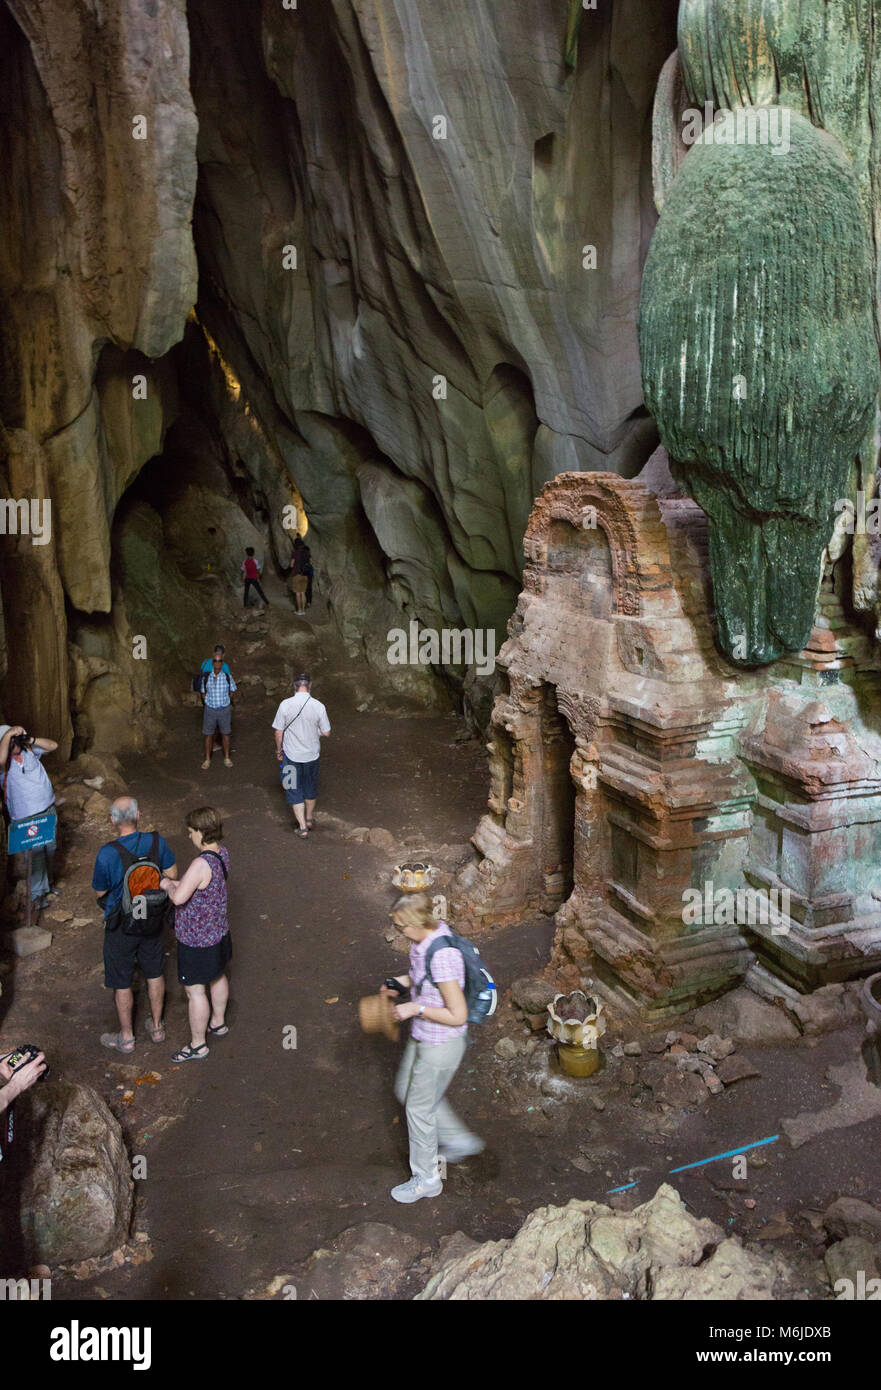 Kambodscha Tourismus - Touristen in Phnom Chhnork, ein 7. Jahrhundert hinduistischen Höhlentempel in der Provinz Kampot Kampot, Kambodscha Asien Stockfoto